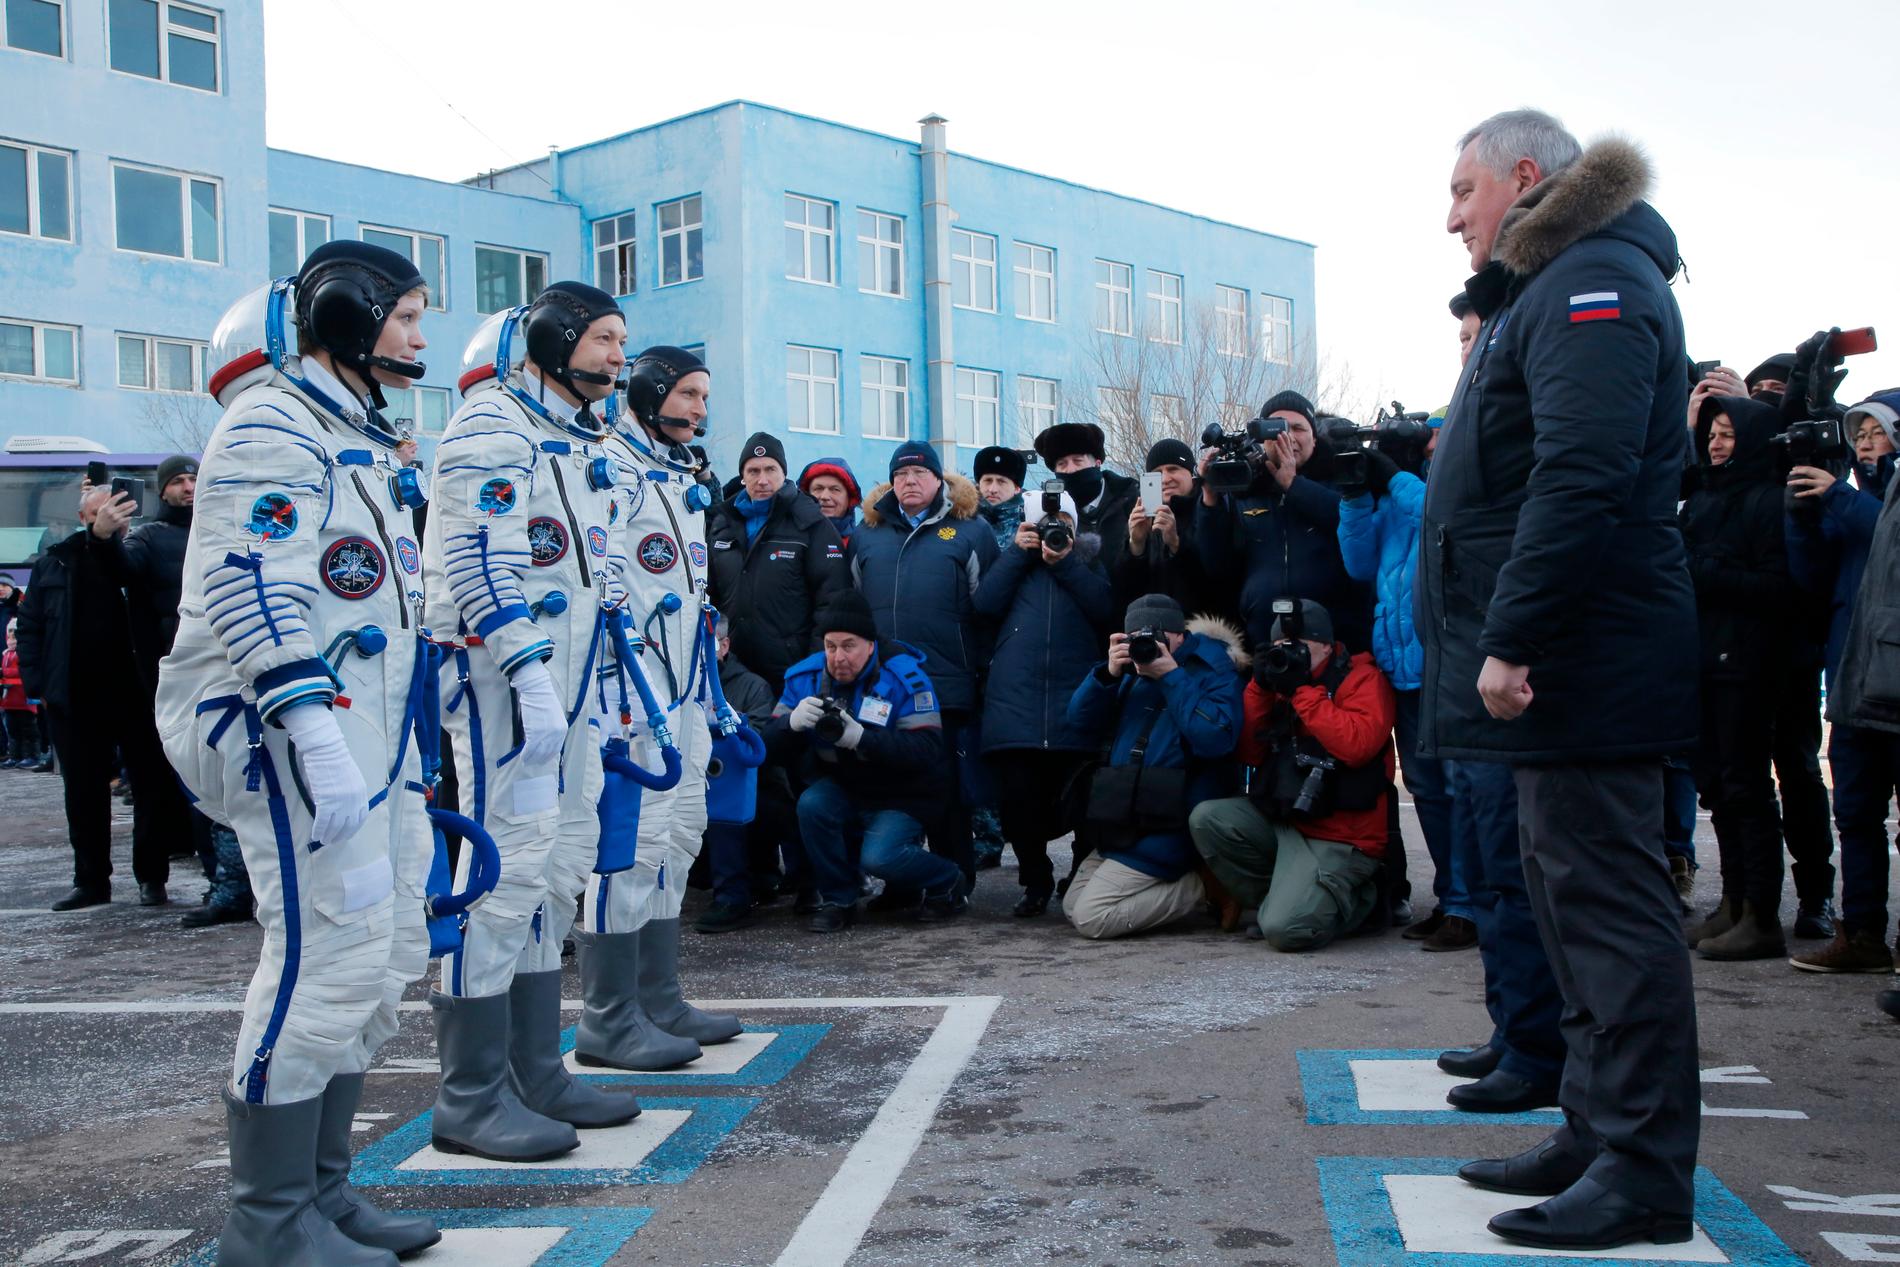 Amerikanska astronauten Anne McClain, ryske kosmonauten Oleg Kononenko och kanadensiske astronauten David Saint-Jacques rapporterar till chefen för Internationella rymdstationen.